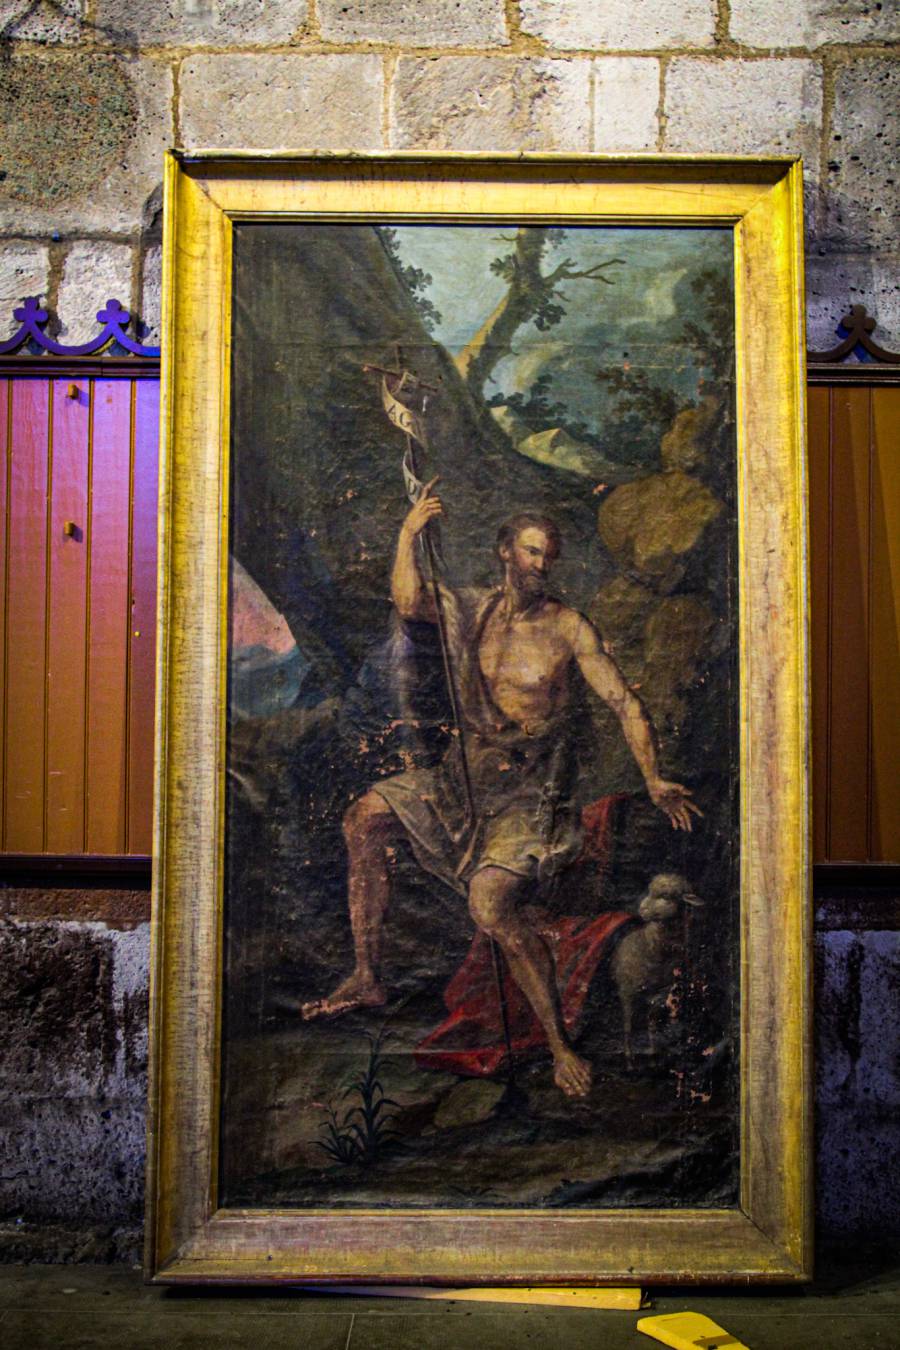 Vias - Deux tableaux exposés dans l'Église en restauration !